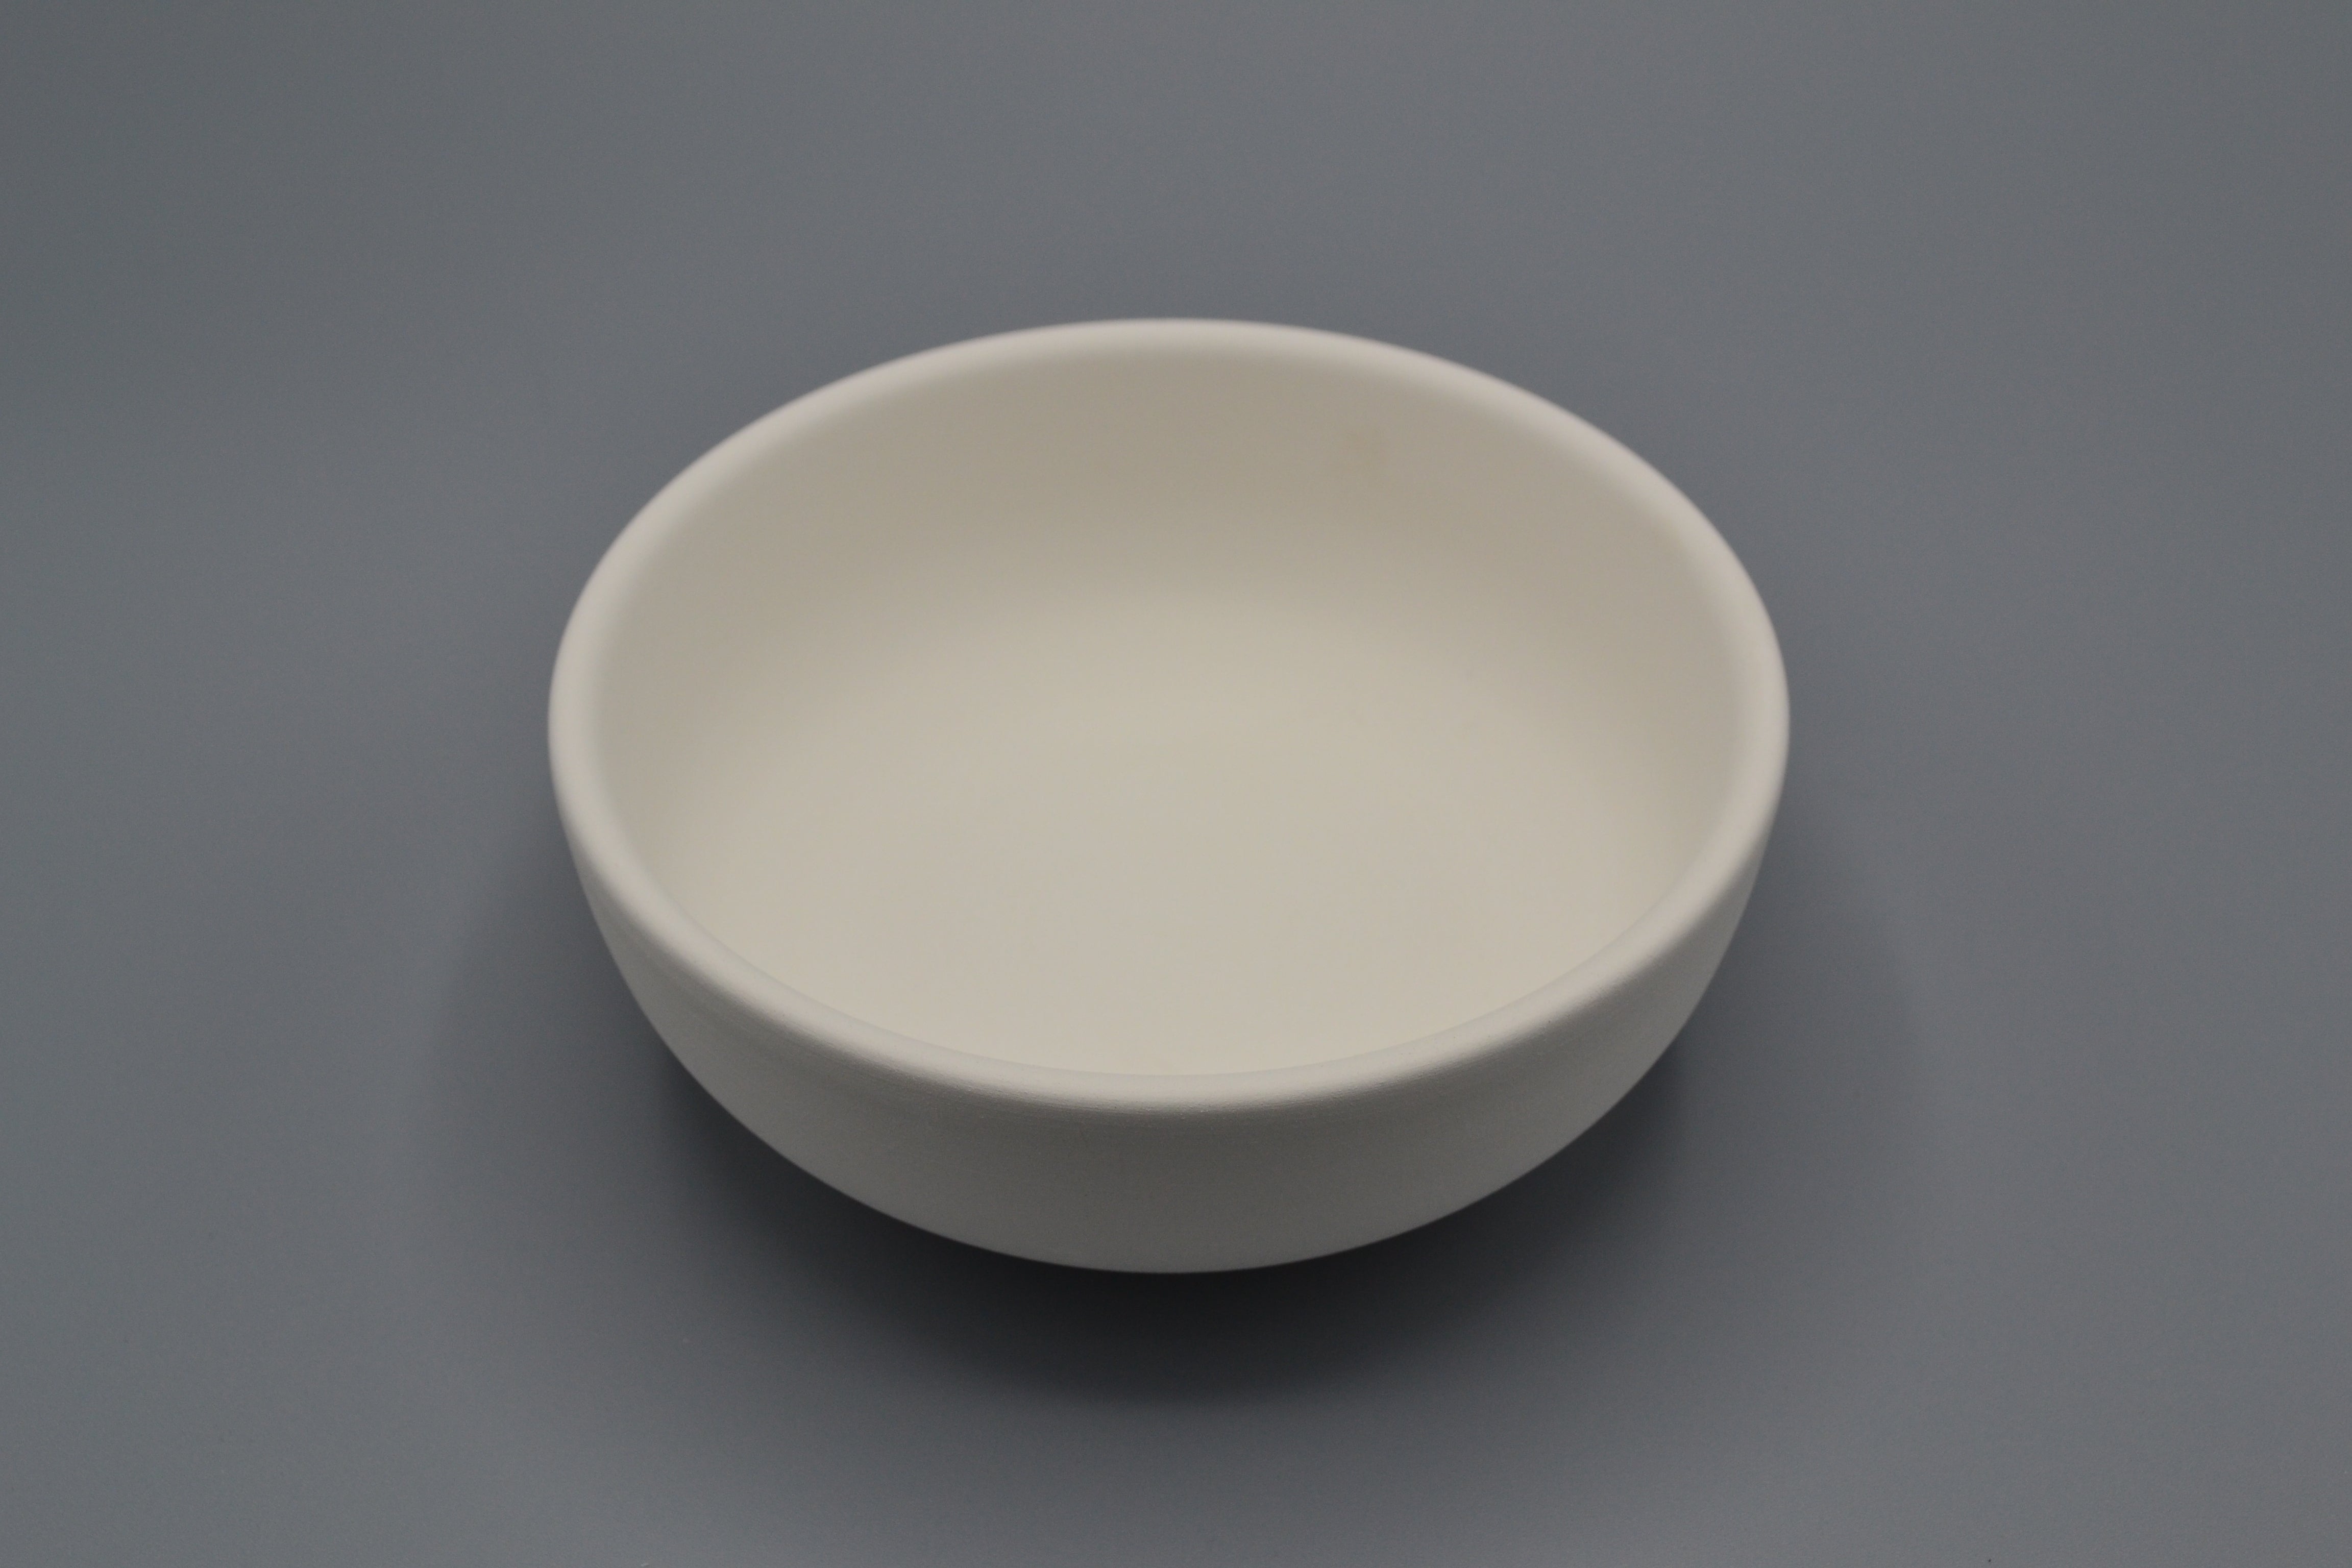 Maialino salvadanaio in ceramica semilavorata GREZZA da dipingere –  Ceramiche Pigato